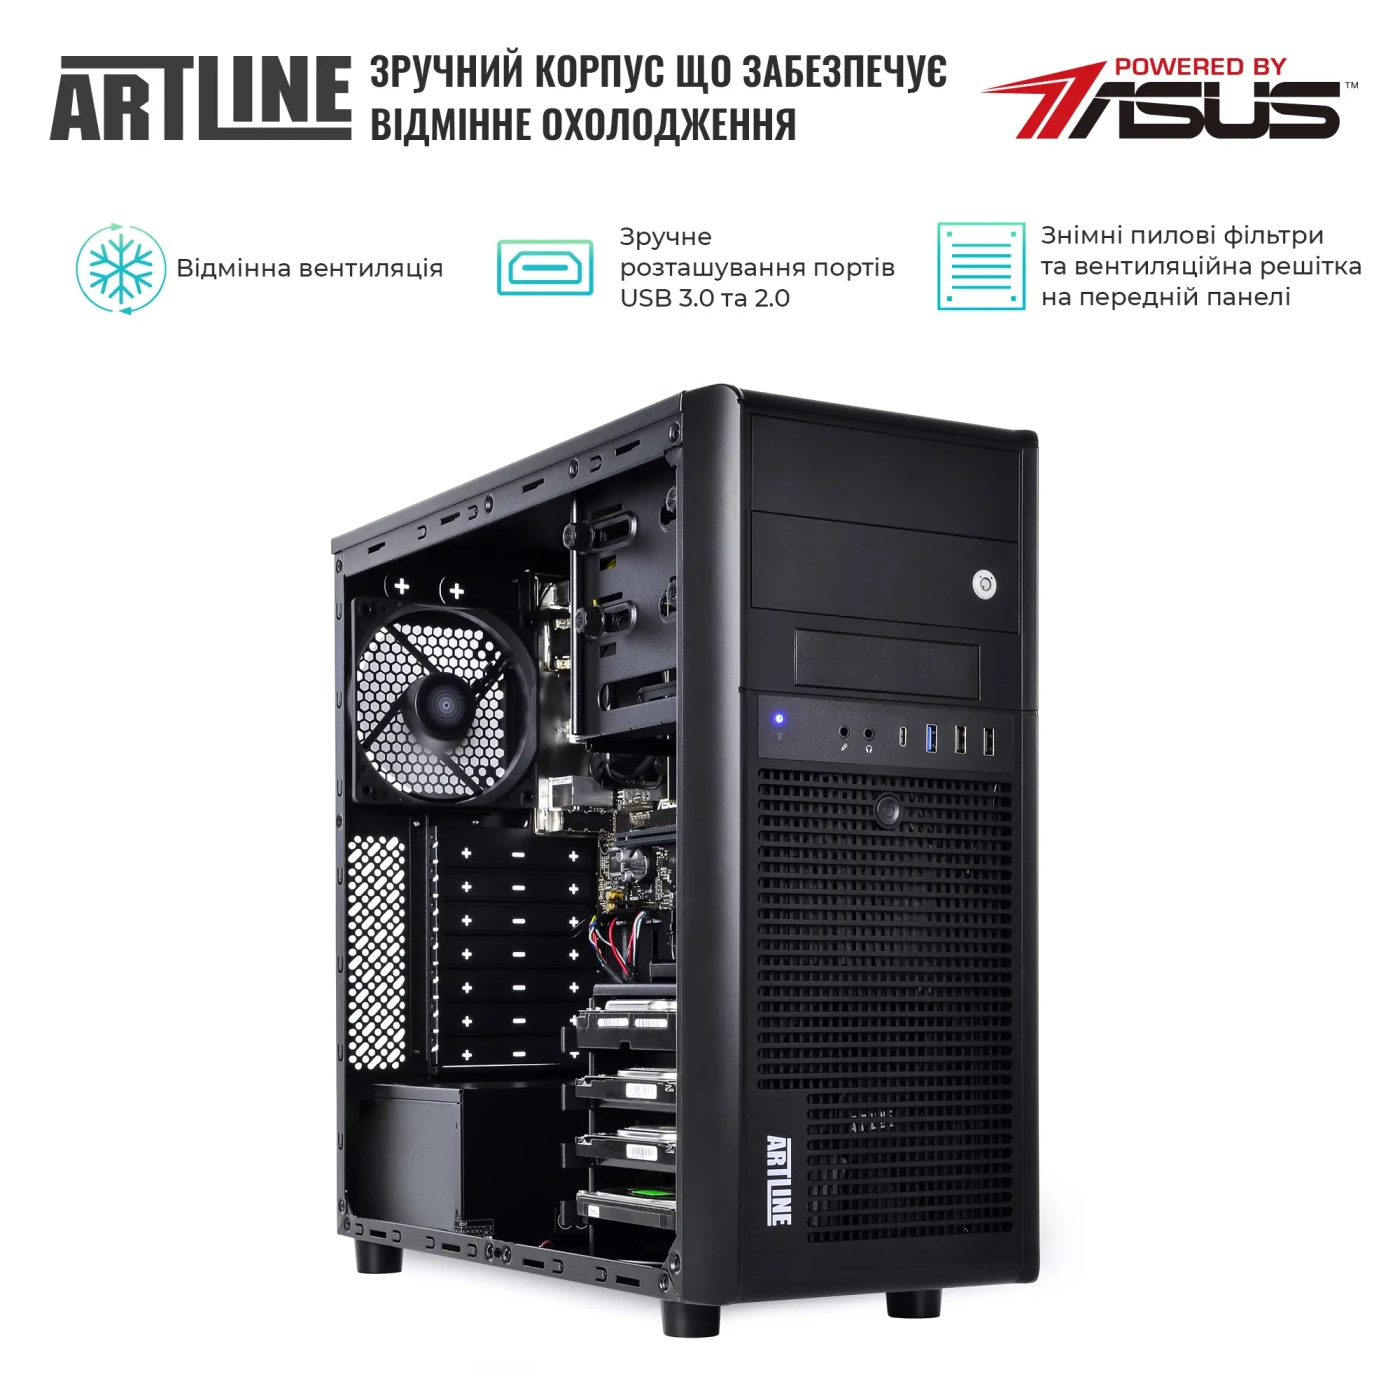 Купить Сервер ARTLINE Business T37 (T37v35) - фото 3